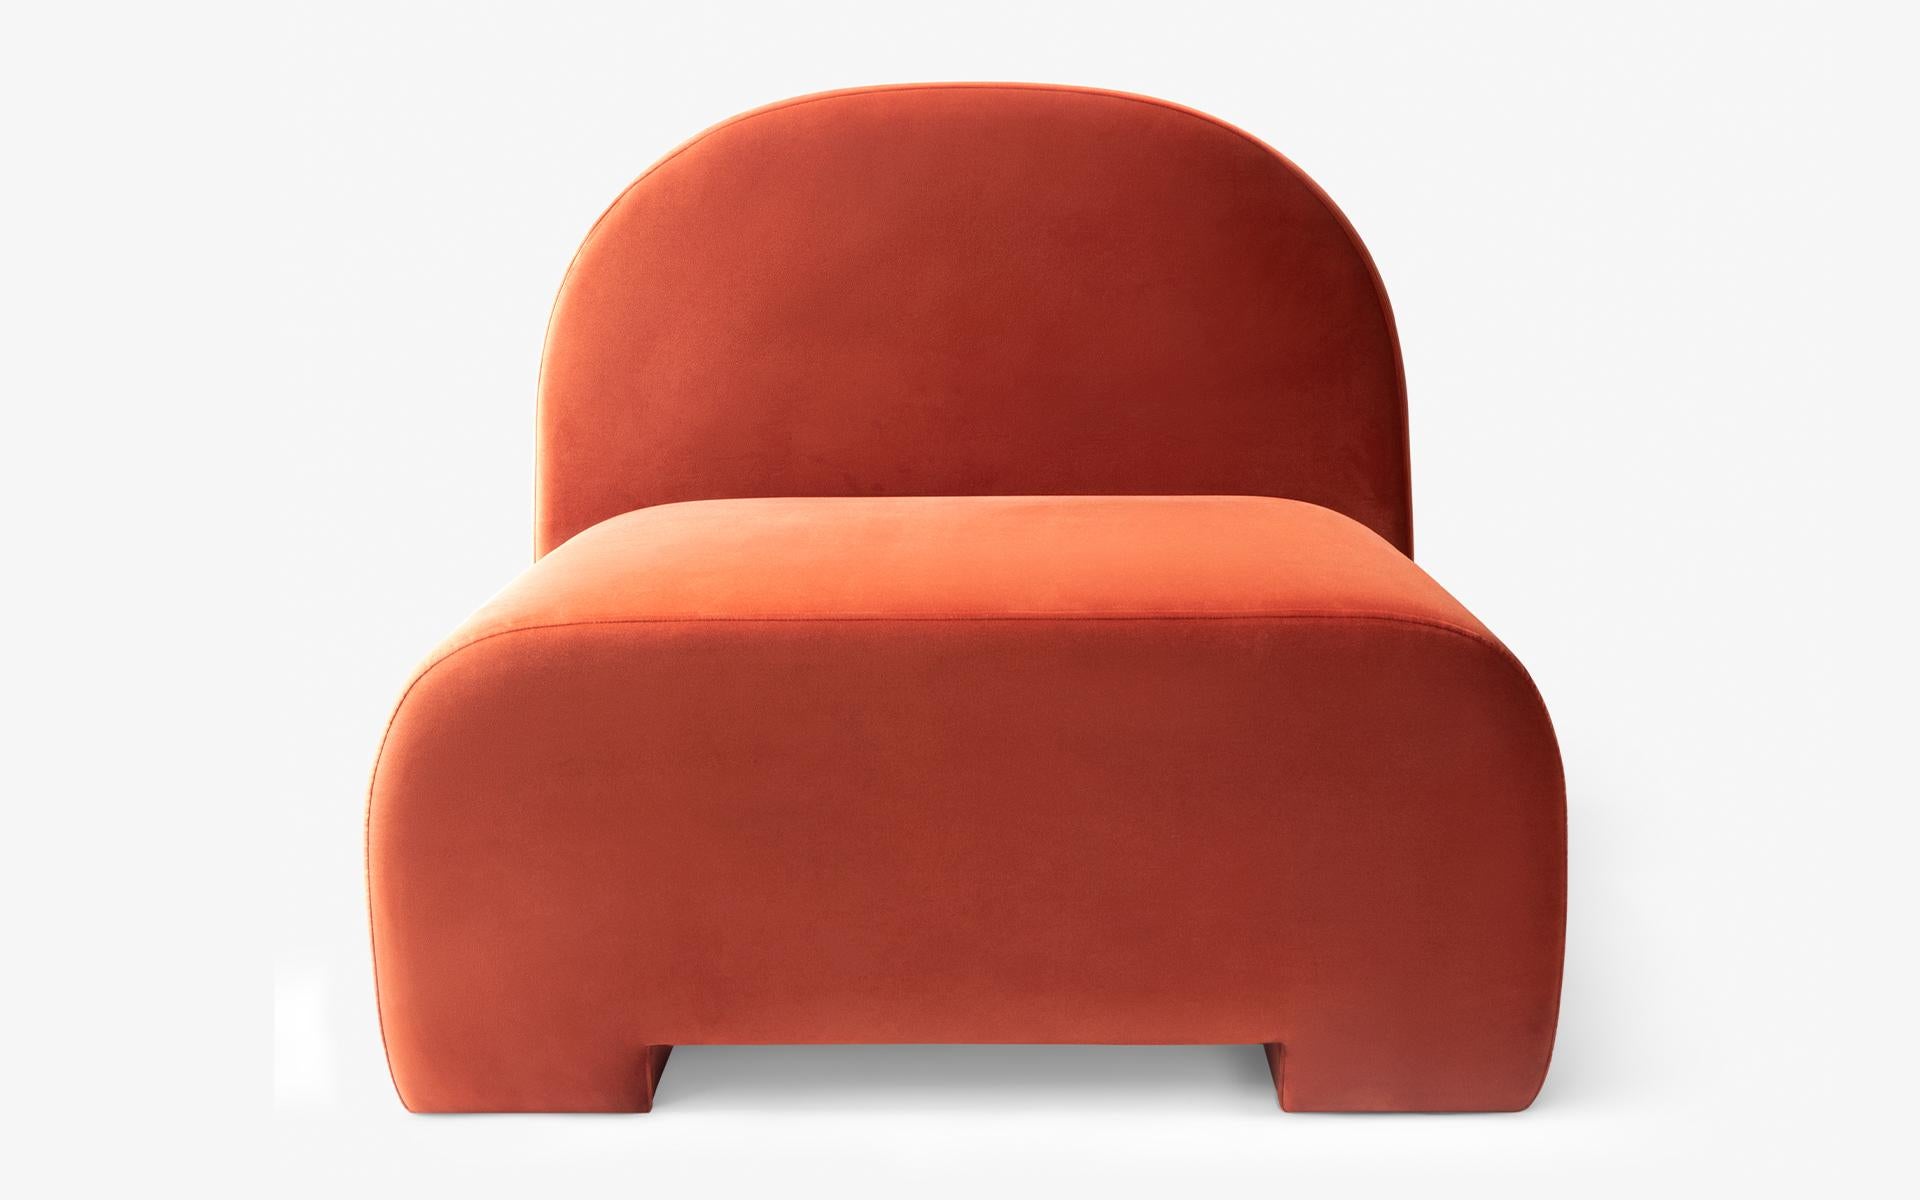 Das Sofa Sosa, das sich durch seine runden Details und die vollflächige Polsterung auszeichnet, kommt mit seinem minimalistischen und schlichten Ansatz in Ihr Wohnzimmer, das Sie jeden Tag aufs Neue genießen werden.

Mit seiner monolithischen